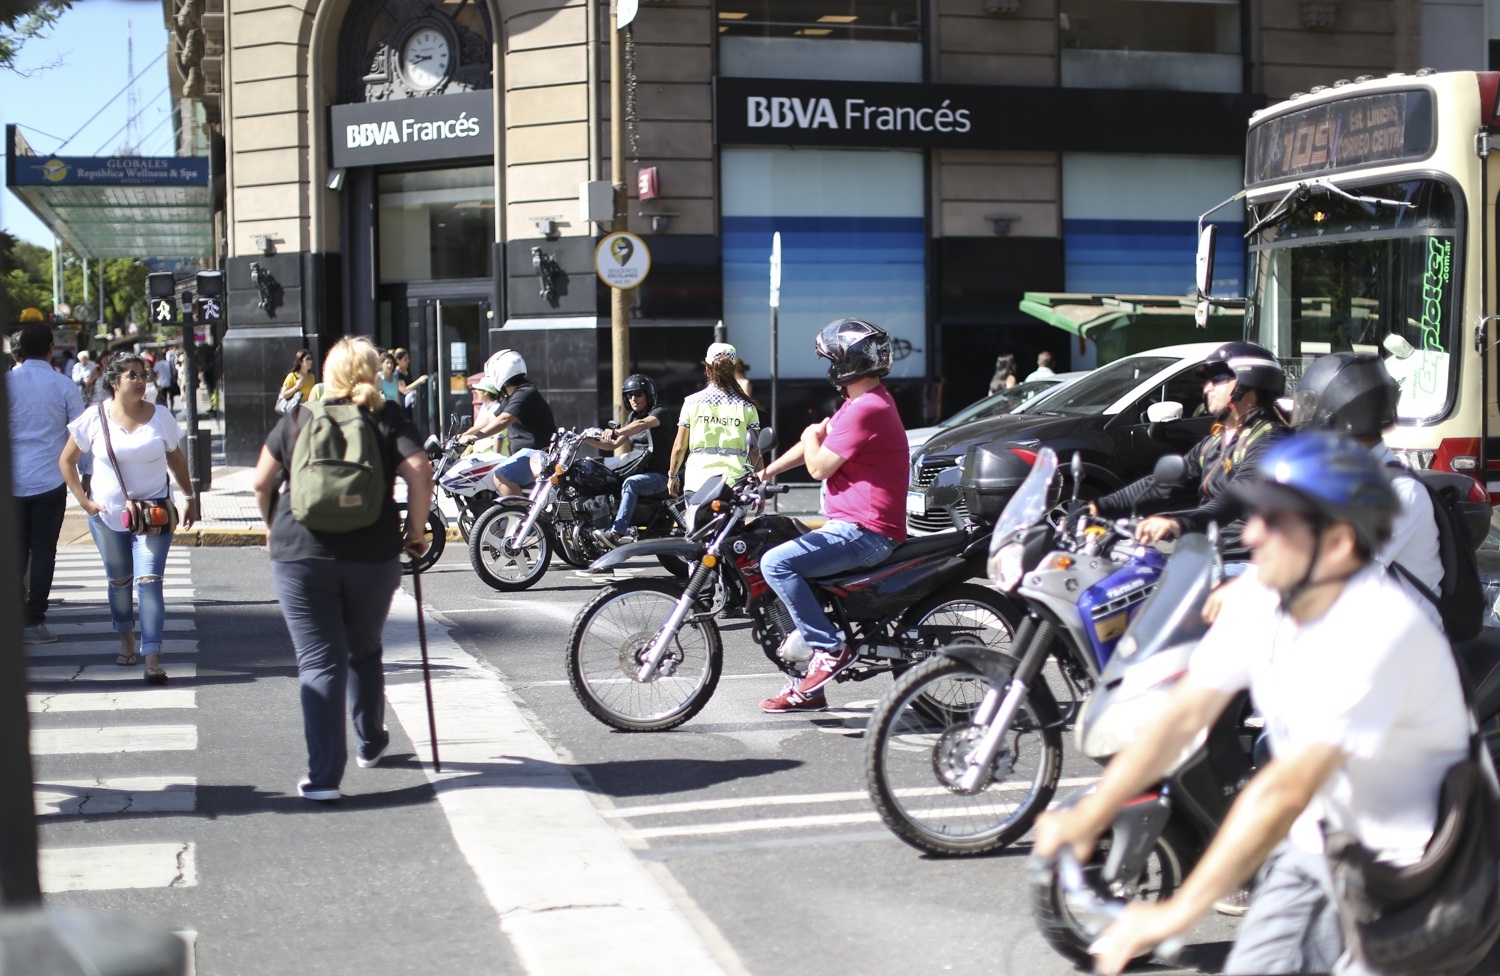 A velocidade excessiva causa 77% das mortes de motociclistas, segundo relatório do Observatório de Segurança Viária da Cidade de Buenos Aires